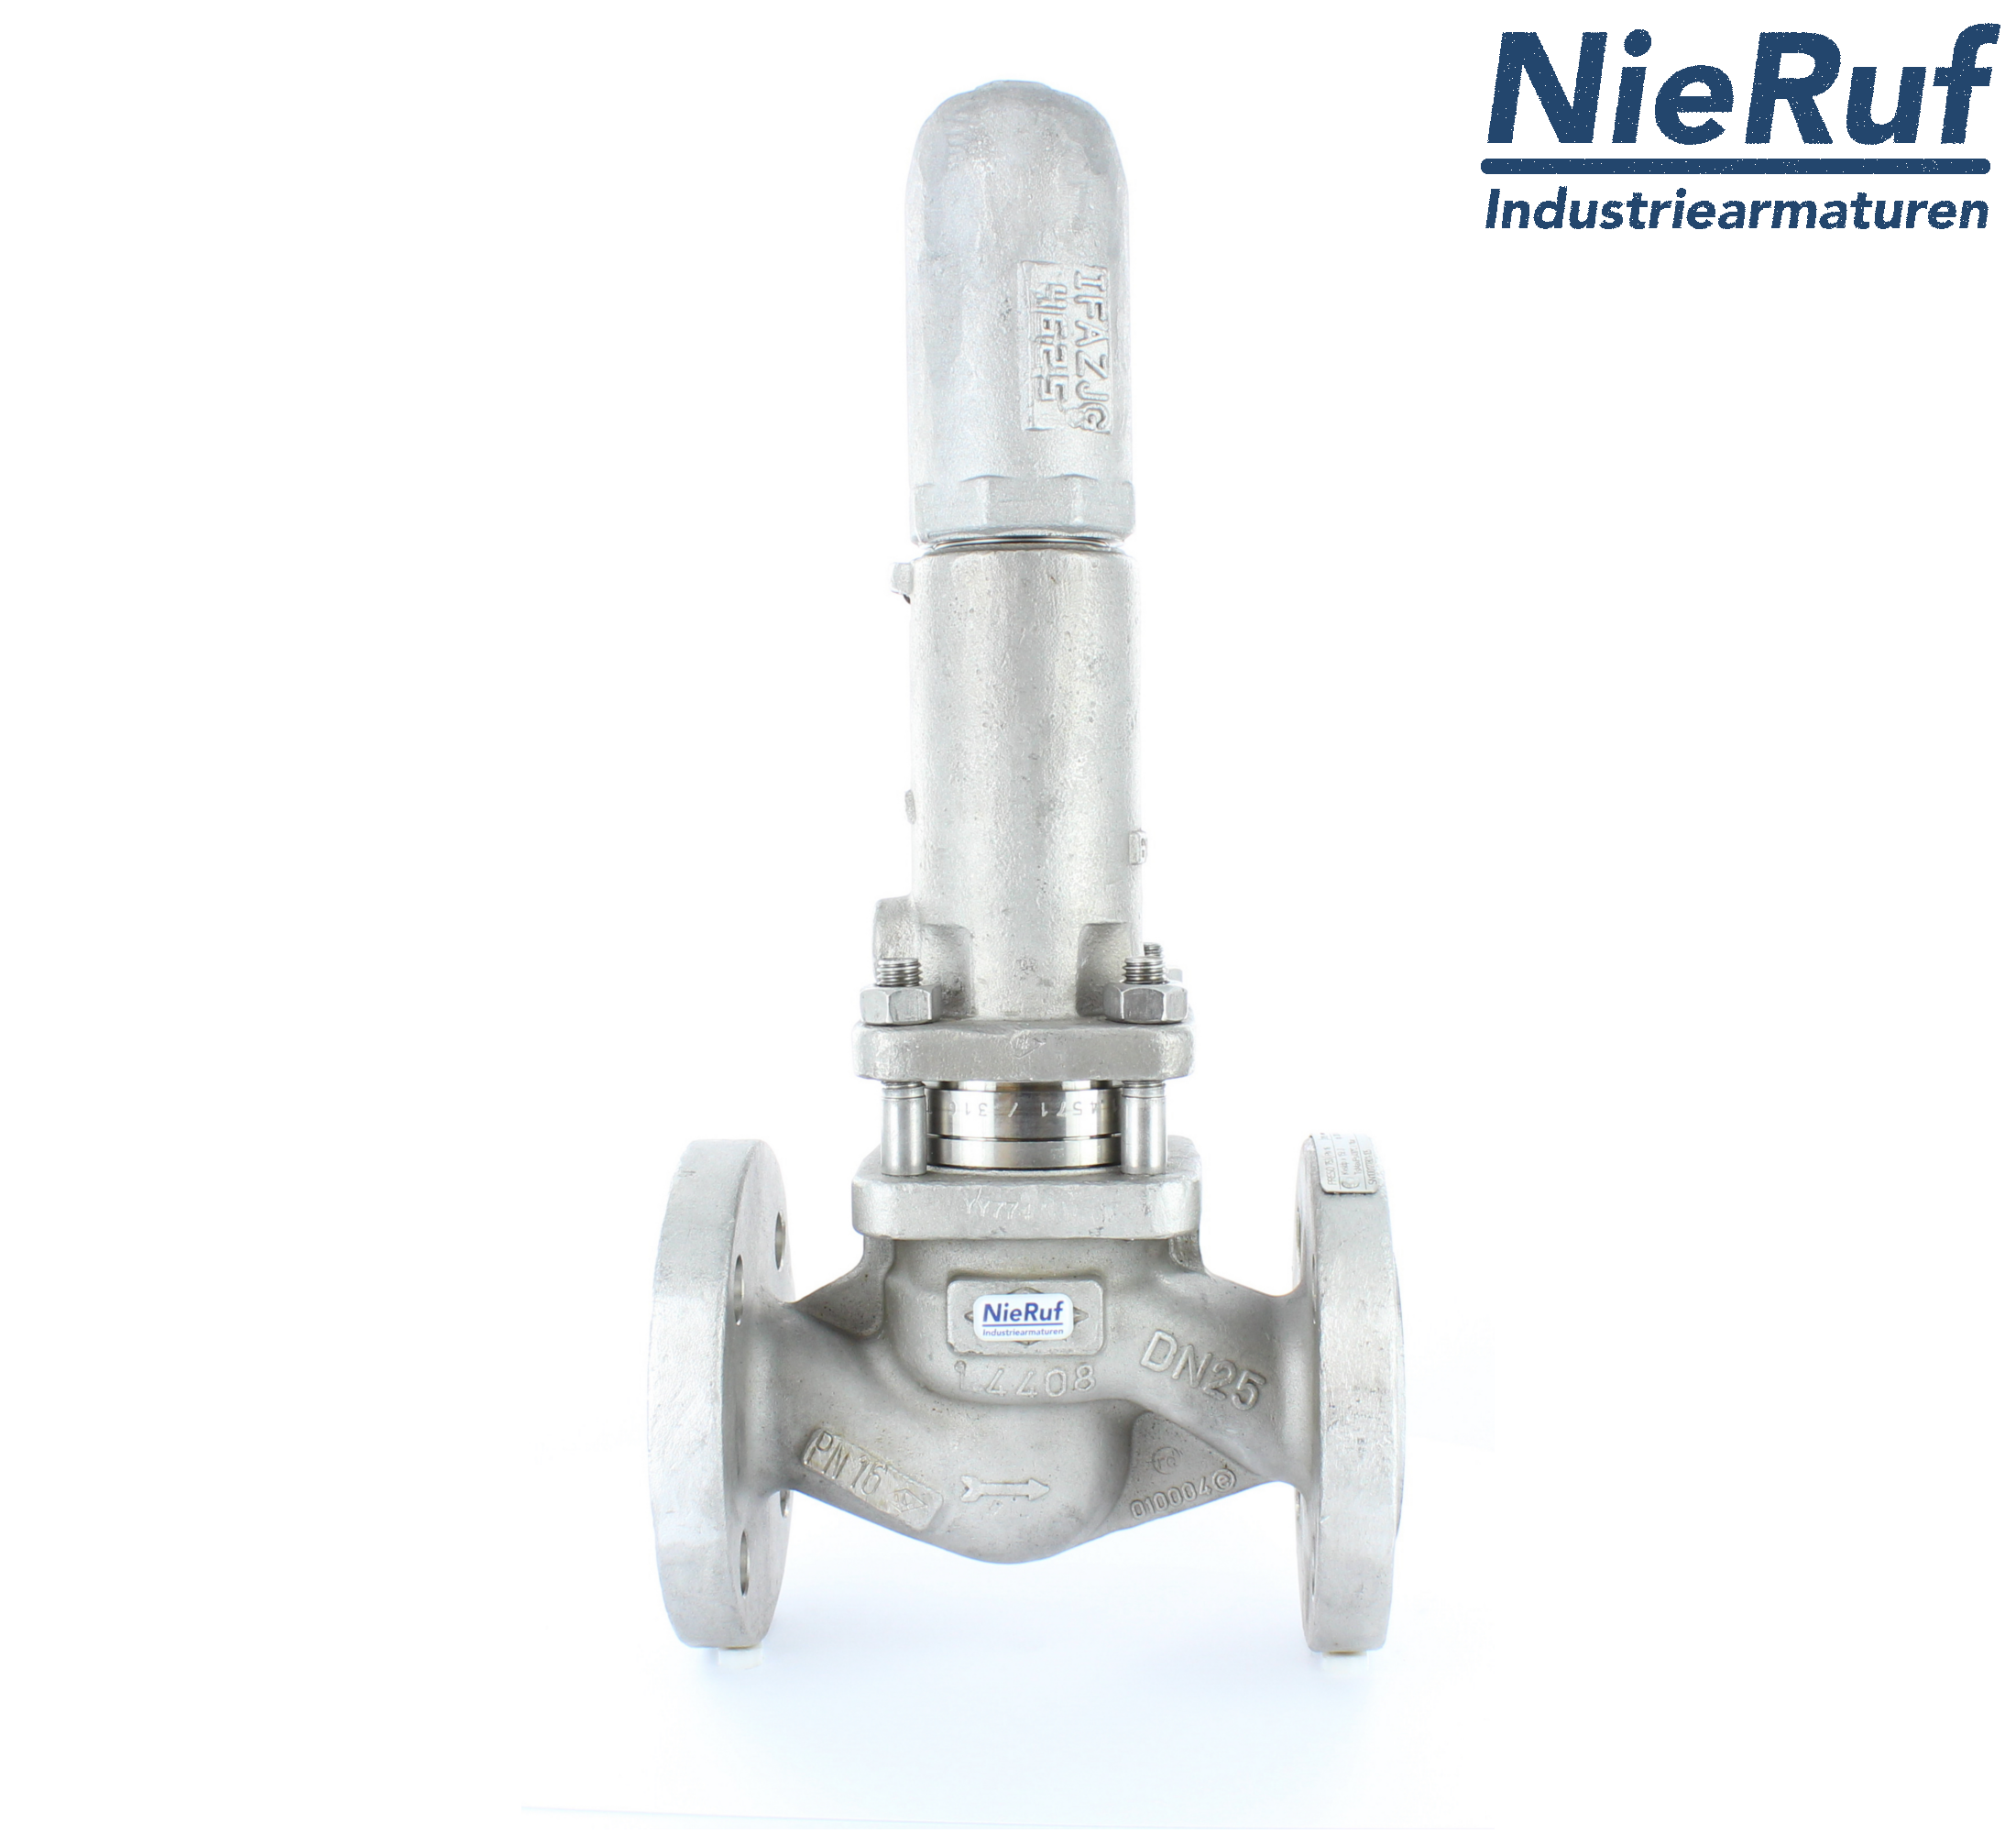 piston overflow valve DN 40 UV13 cast iron 1.0619+N 2,0 - 5,0 bar